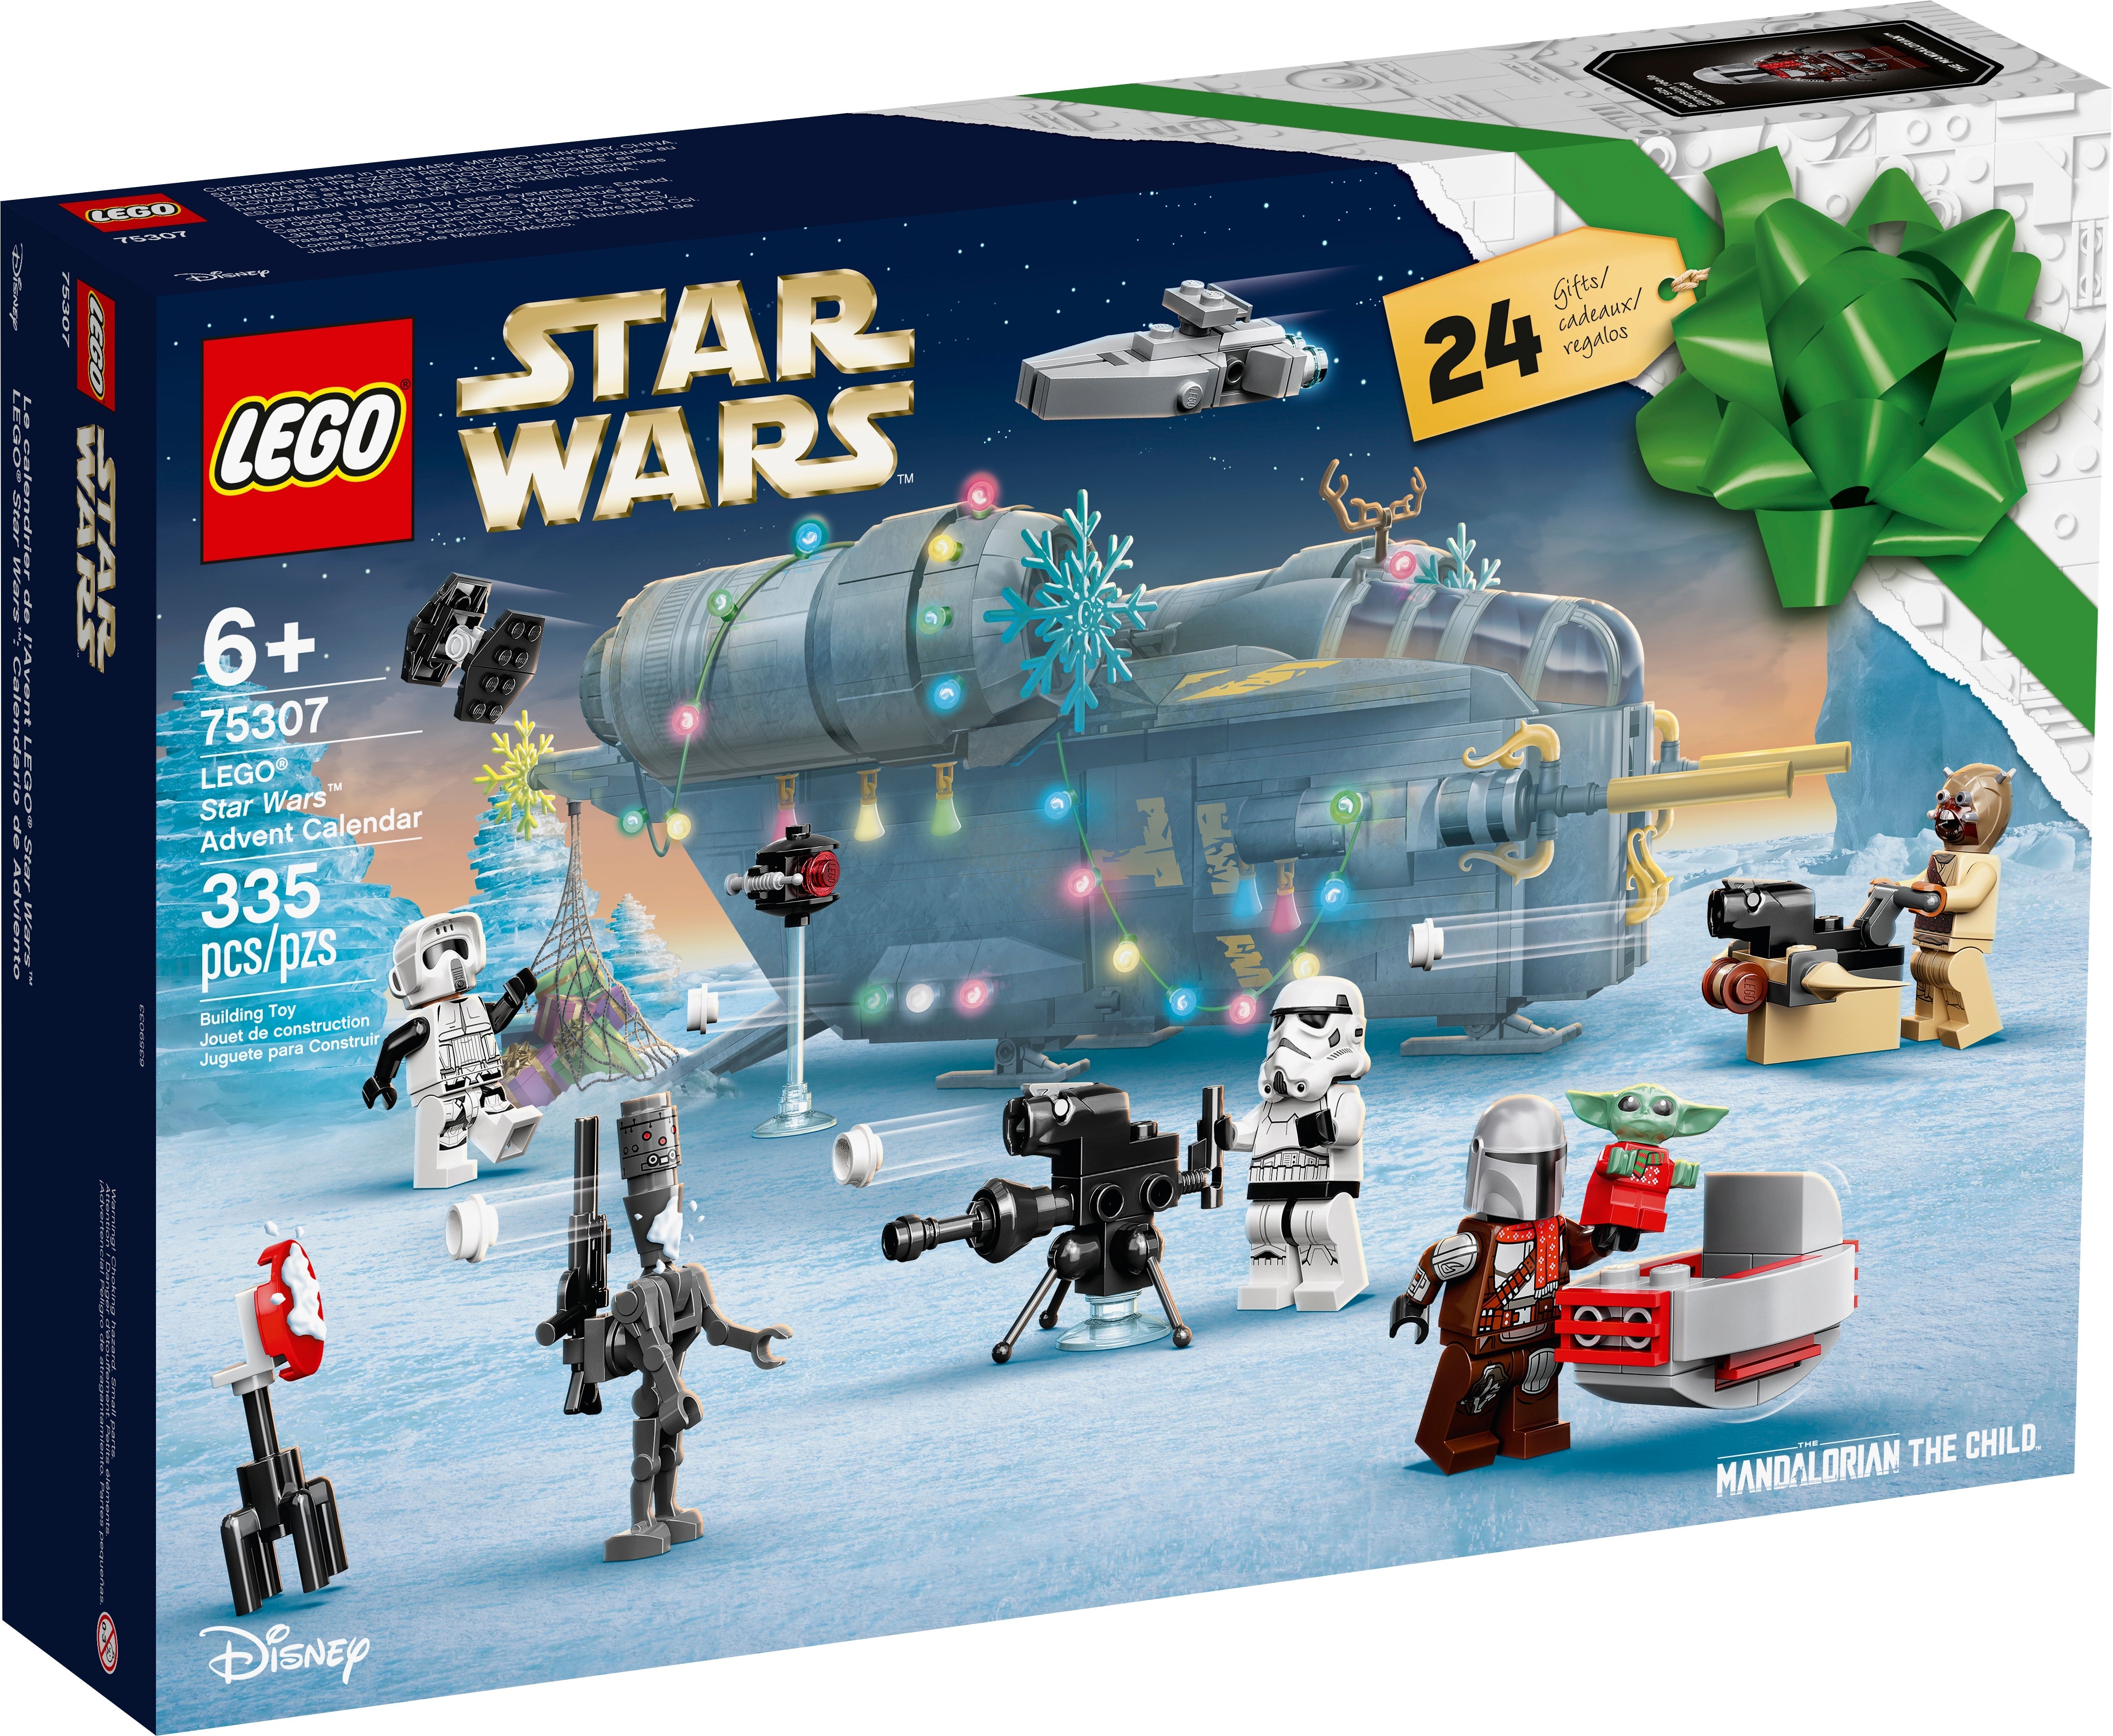 LEGO Star Wars Adventskalender (75307) - im GOLDSTIEN.SHOP verfügbar mit Gratisversand ab Schweizer Lager! (5702016933840)